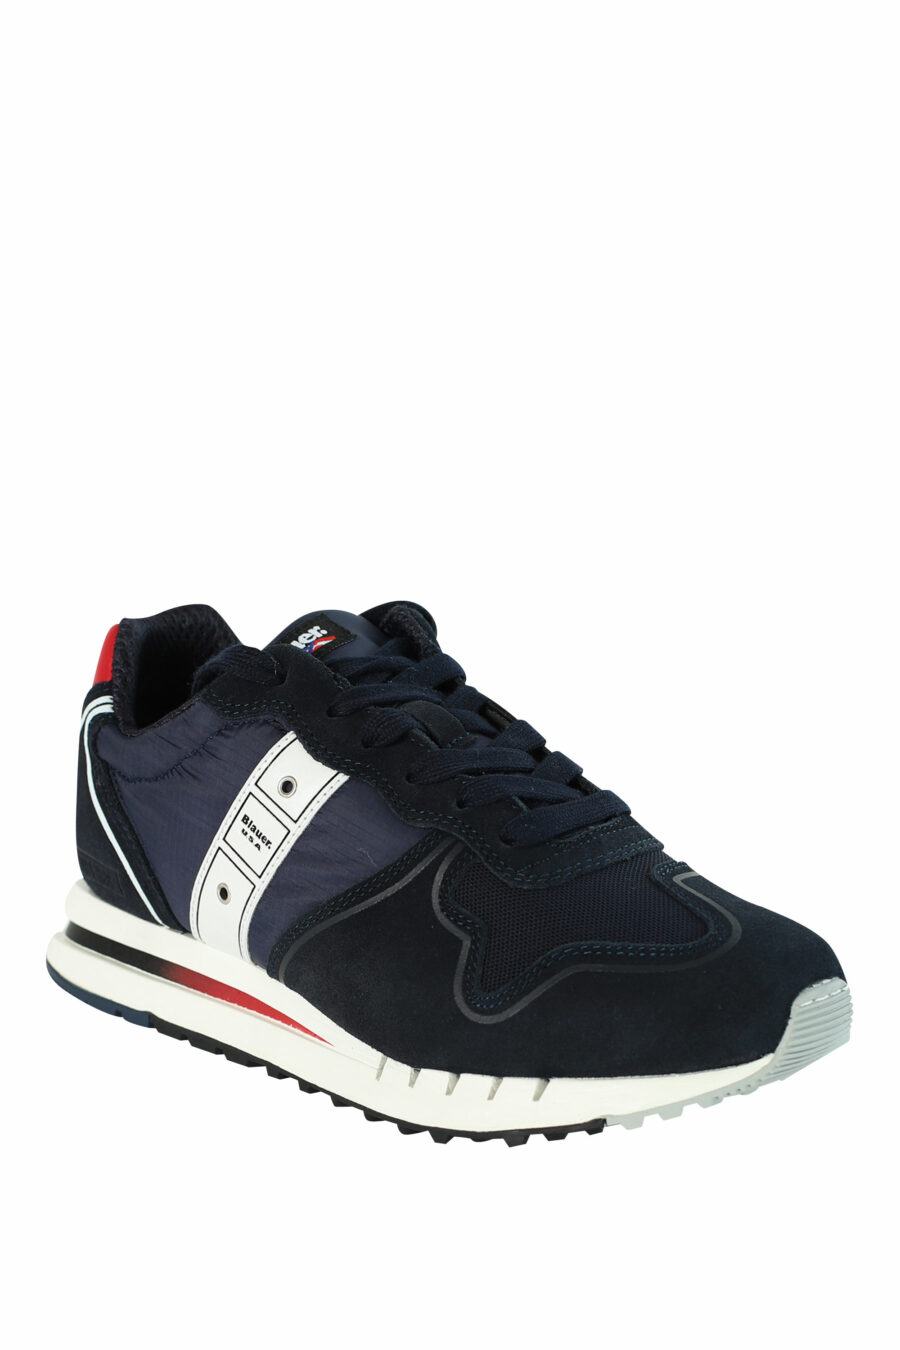 Blue "QUARTZ" shoes with red details - 8058156499454 2